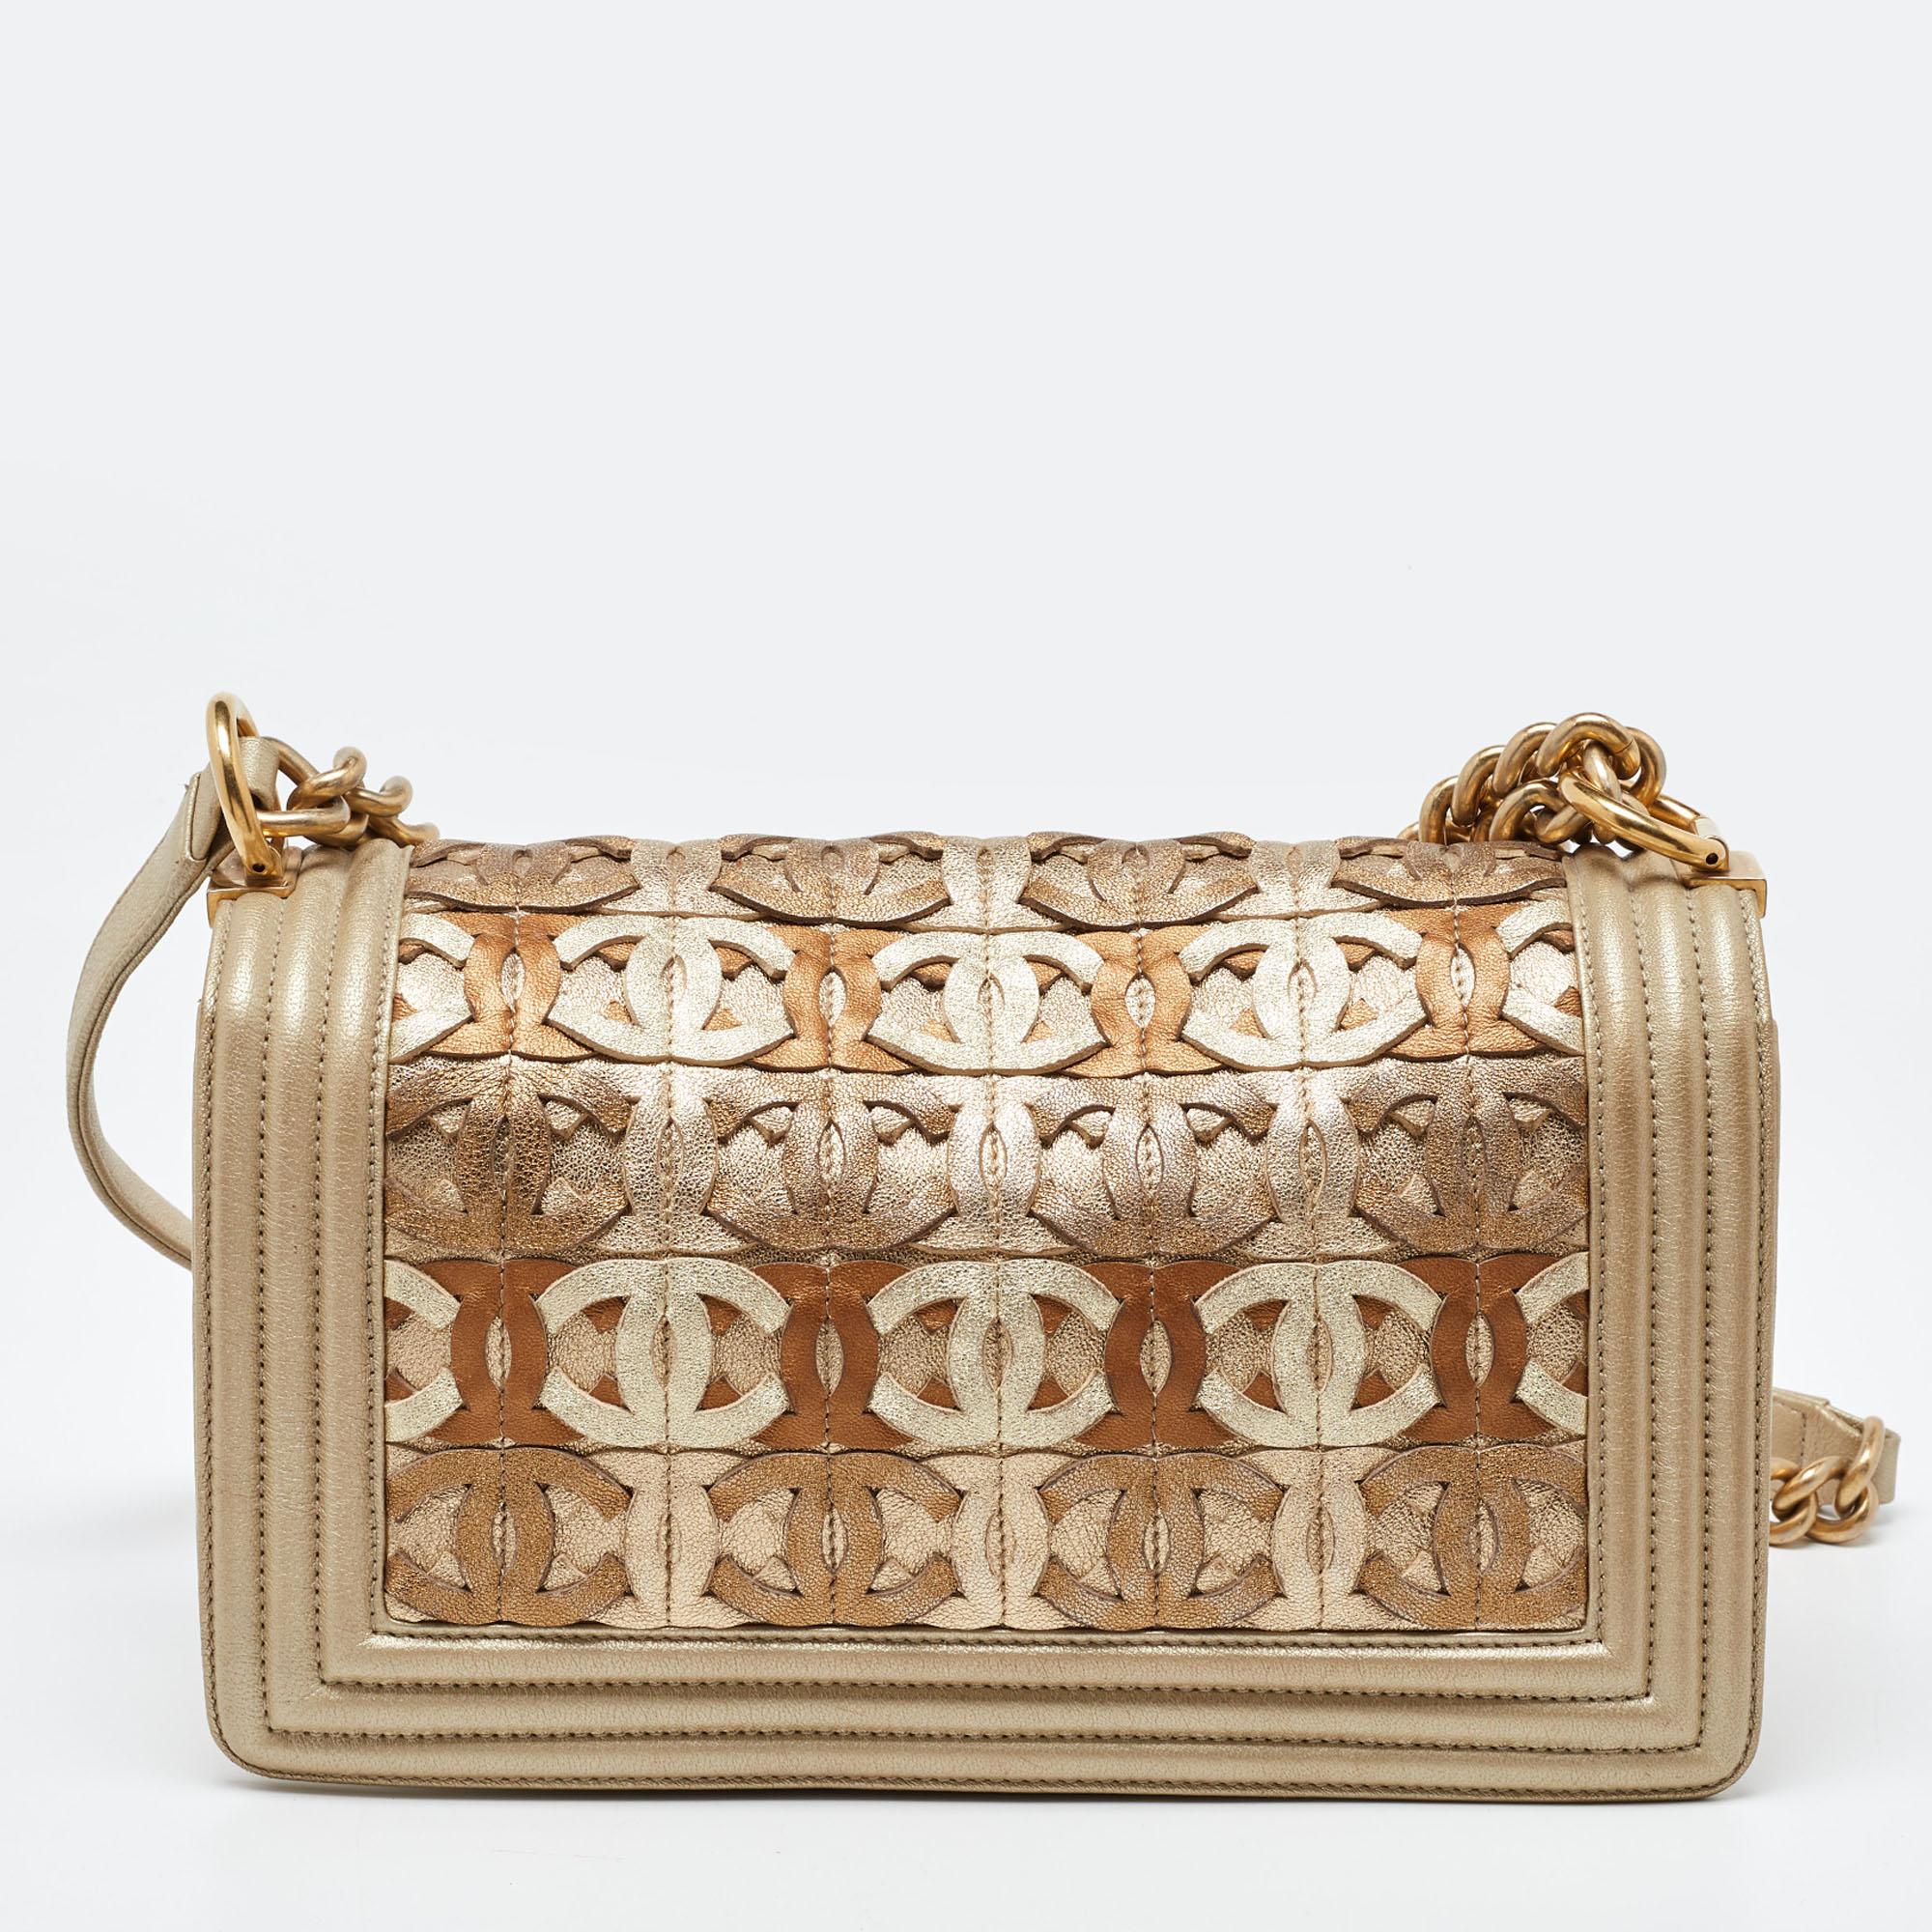 Mit dieser Chanel Gold Boy Flap Bag können Sie alles, was Sie brauchen, stilvoll transportieren. Gefertigt aus den besten MATERIALEN, ist dies ein Accessoire, das dauerhaften Stil und Gebrauch verspricht.

